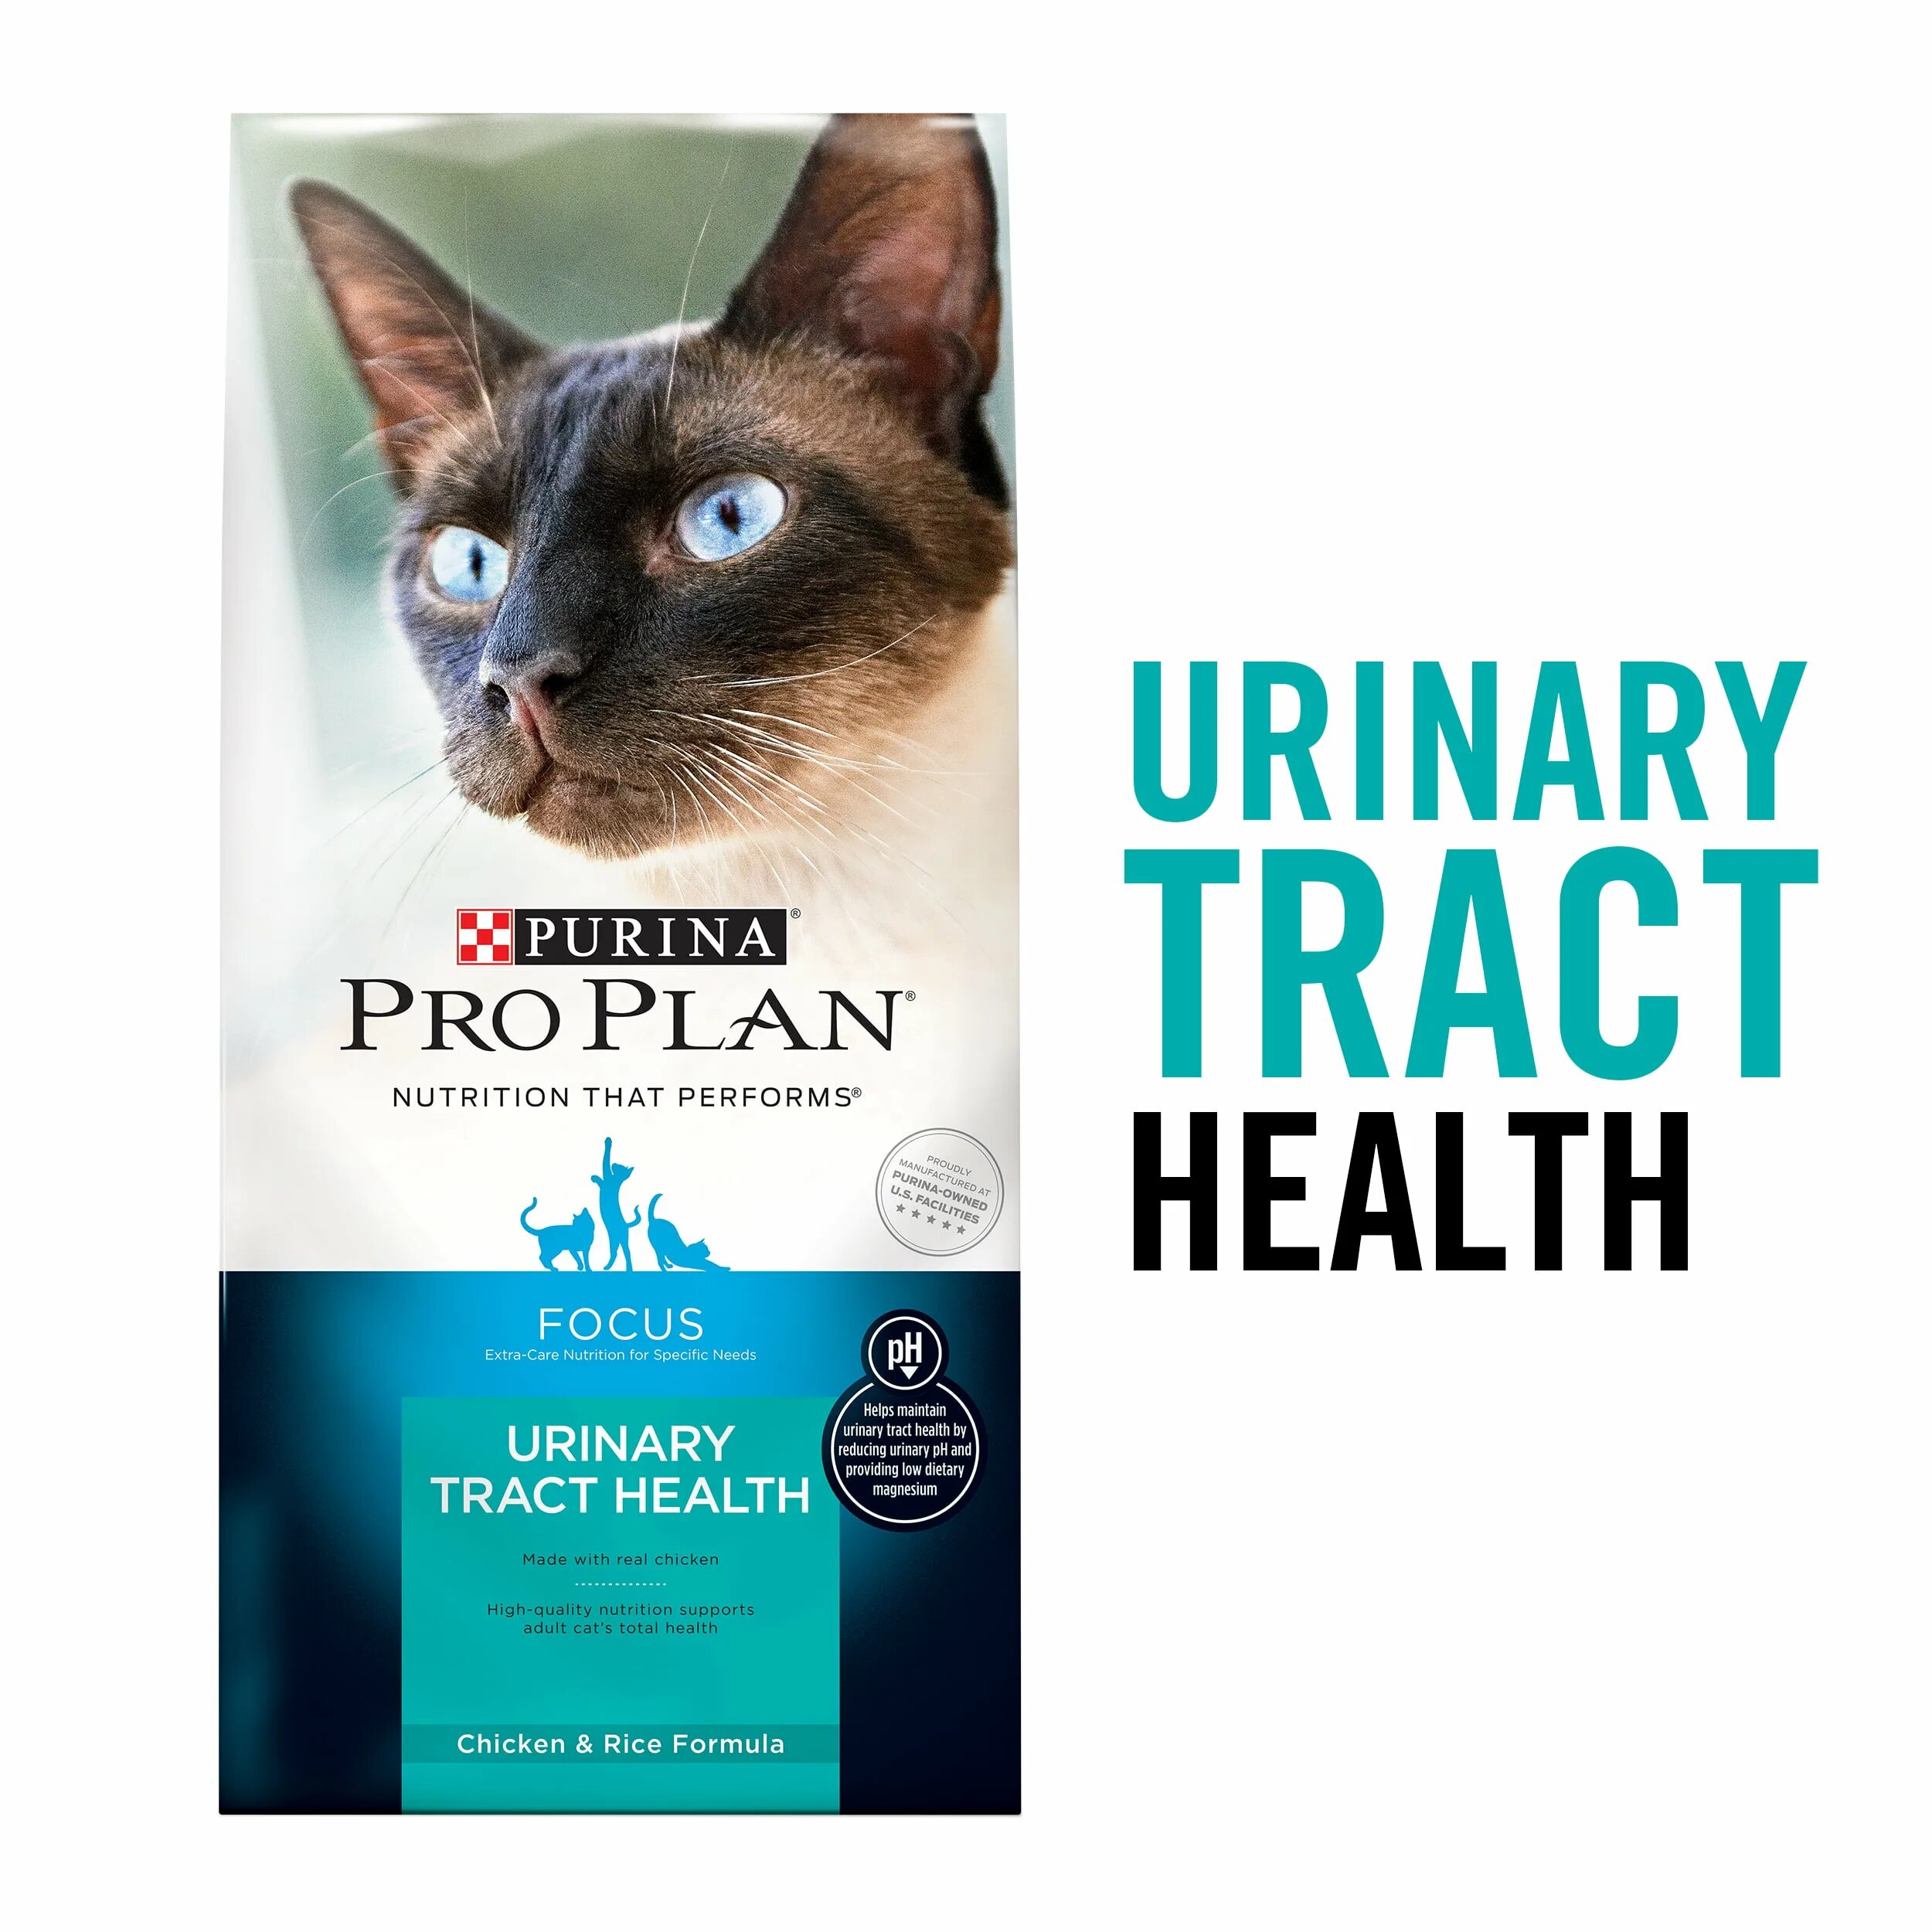 Purina urinary для кошек. Purina Pro Plan Focus для кошек. Из книг Алексея Пурина.